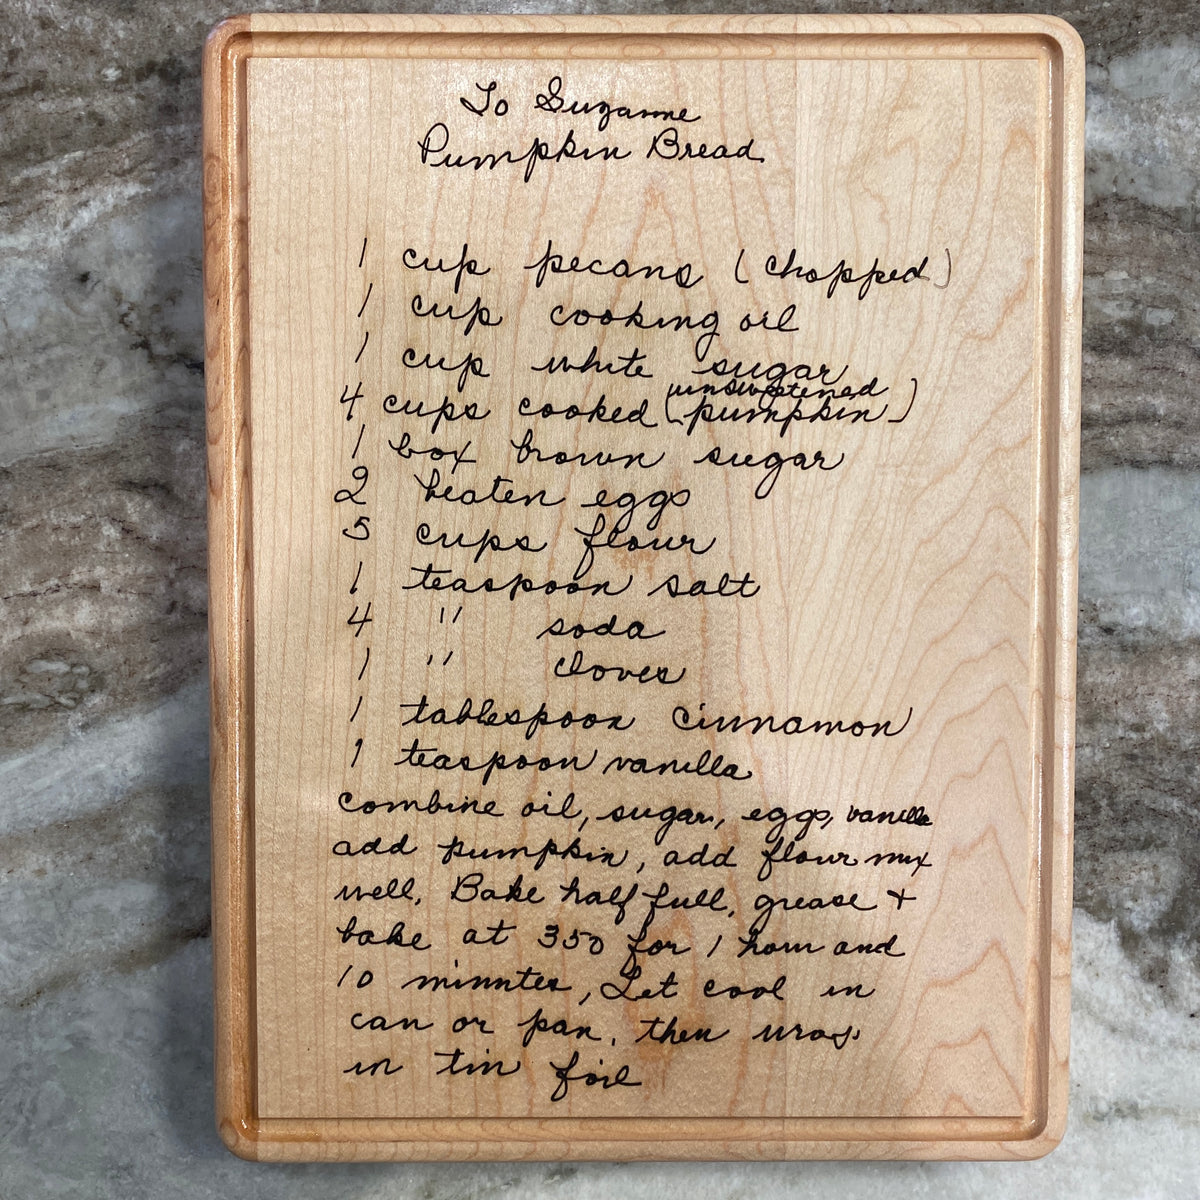 Handwritten recipe in script laser engraved on Light Maple Wood Cutting Board